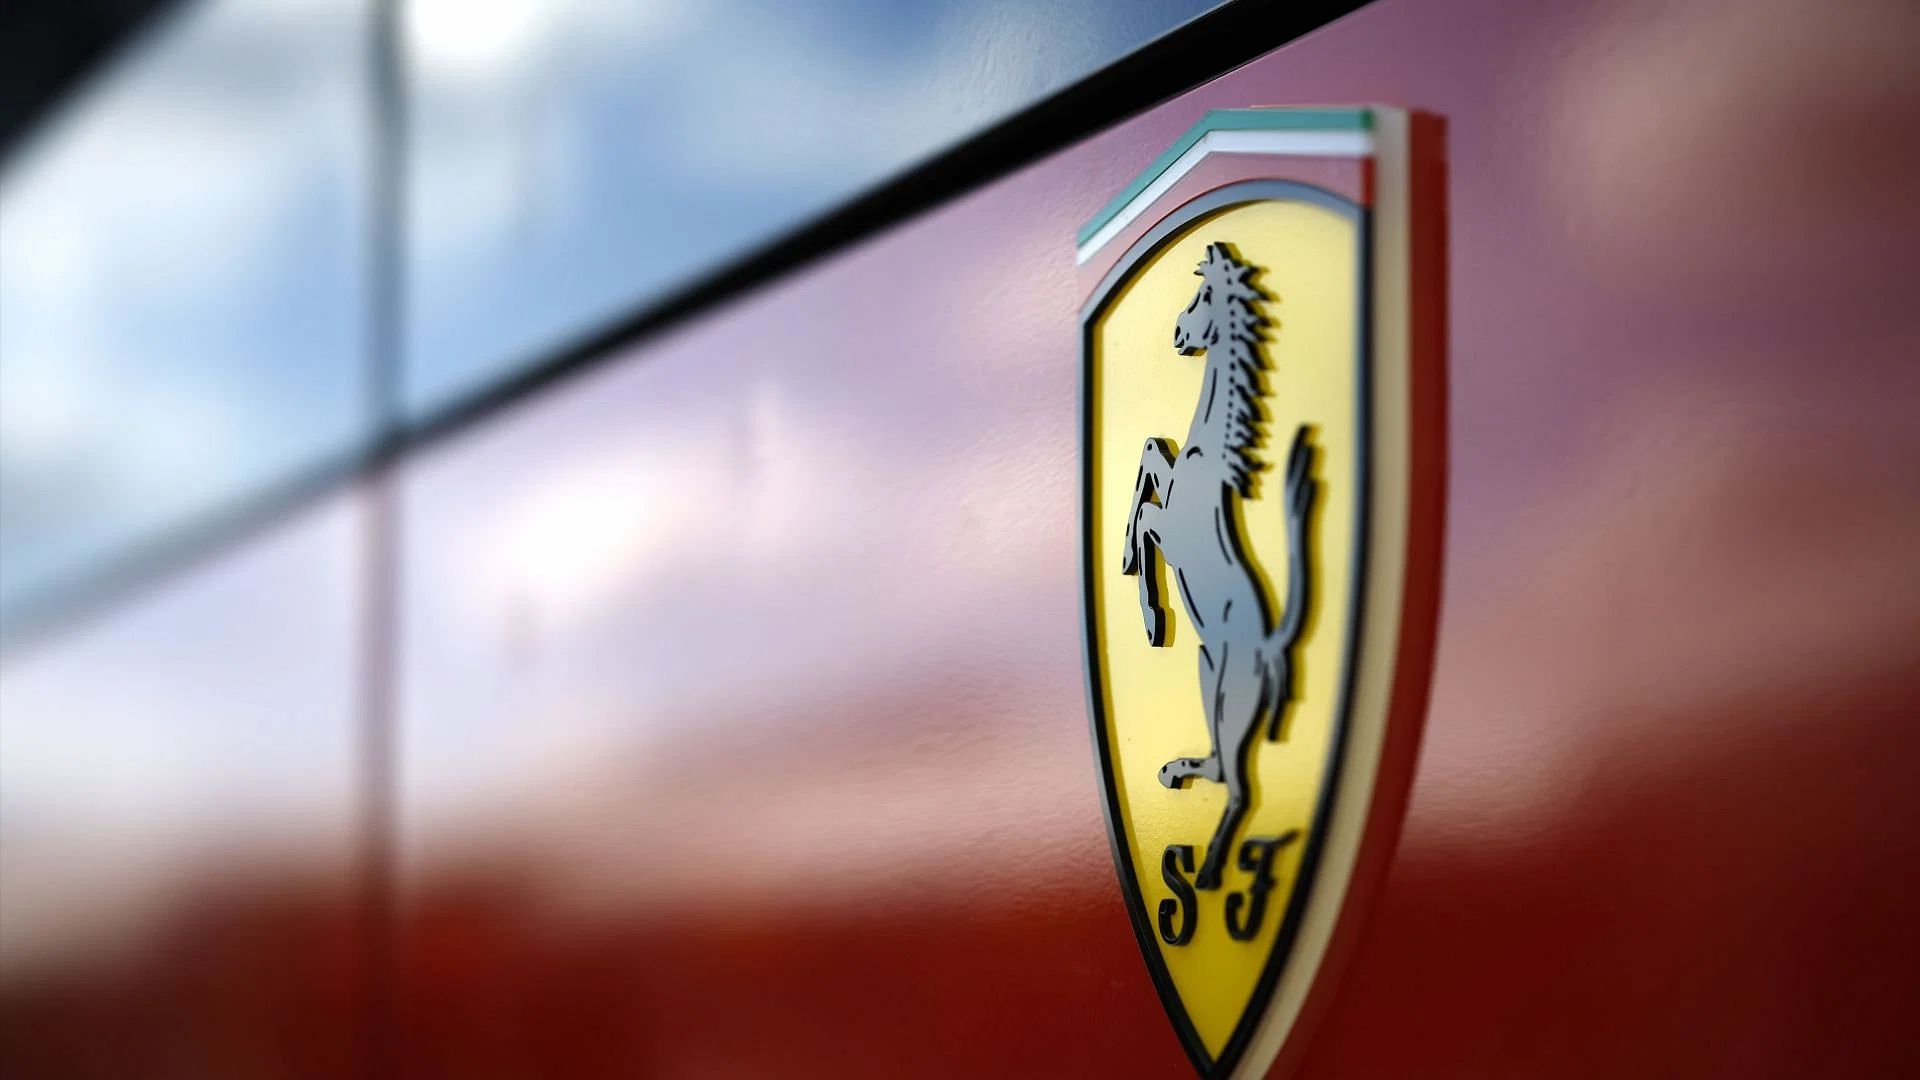 Крупное обновление для силового агрегата «Ferrari» в Формуле 1 на 2026 год, за два года до вступления в силу новых регламентов.